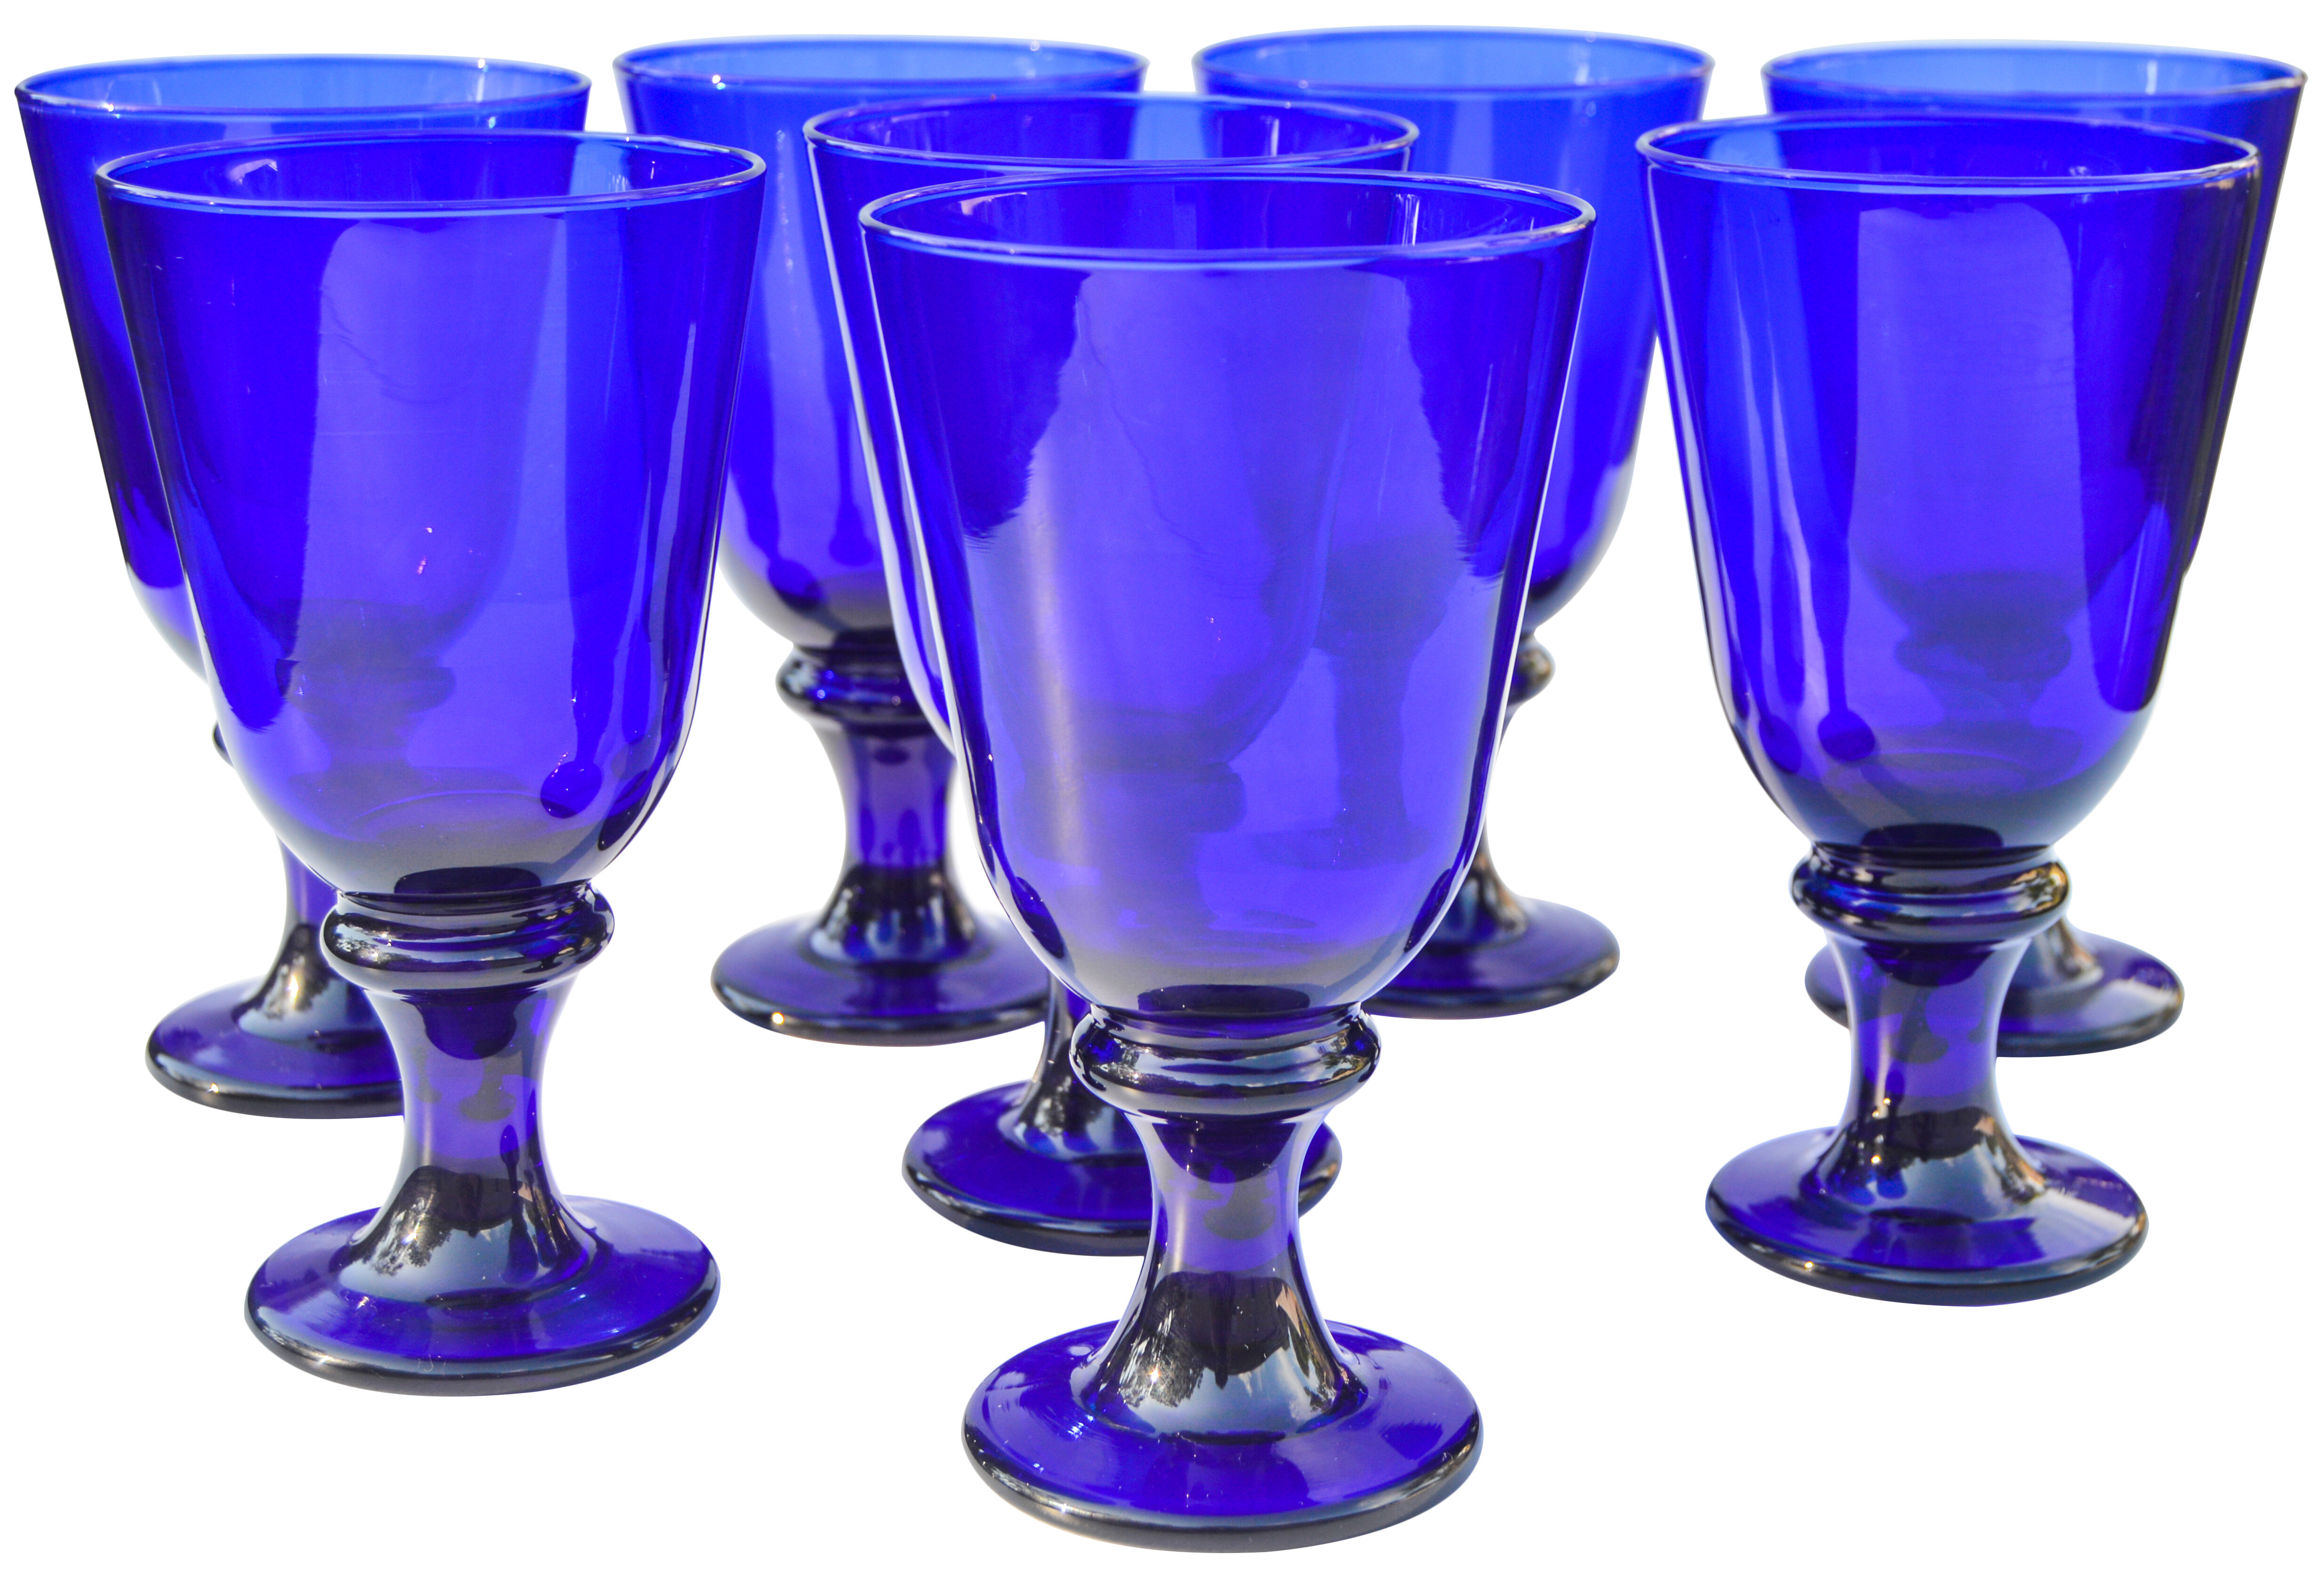 Viski Meridian Highball Glasses Set of 2 - Vintage Drinking Glass, Art Deco  Ripple Glassware Design, 15oz Gold Rimmed Collins Glasses Set